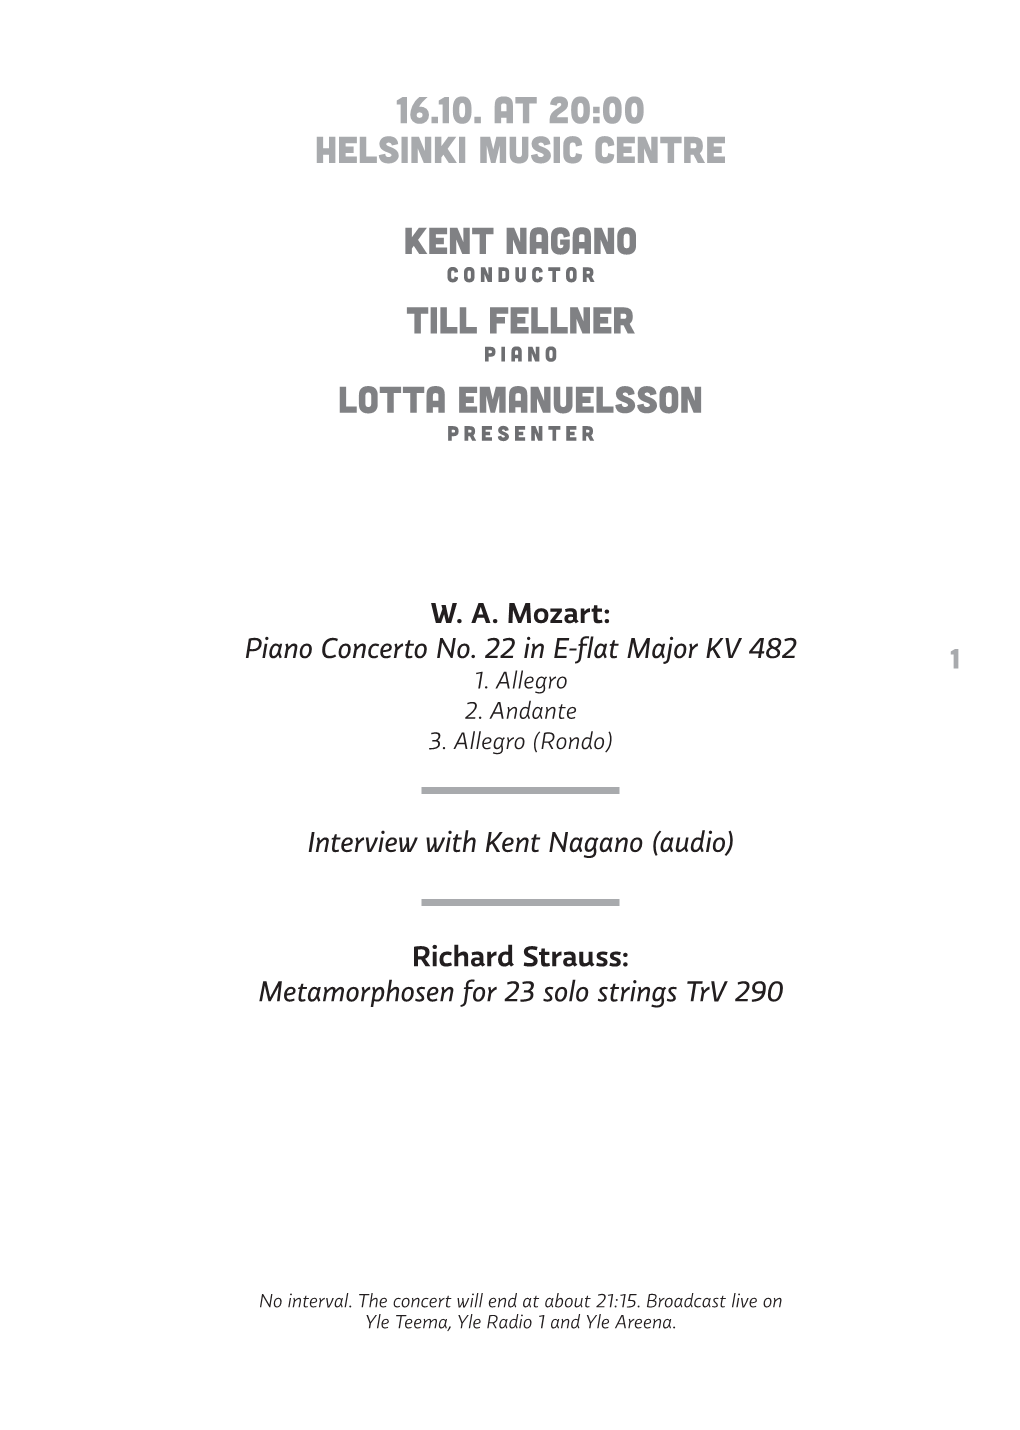 16.10. at 20:00 Helsinki Music Centre Kent Nagano Till Fellner Lotta Emanuelsson